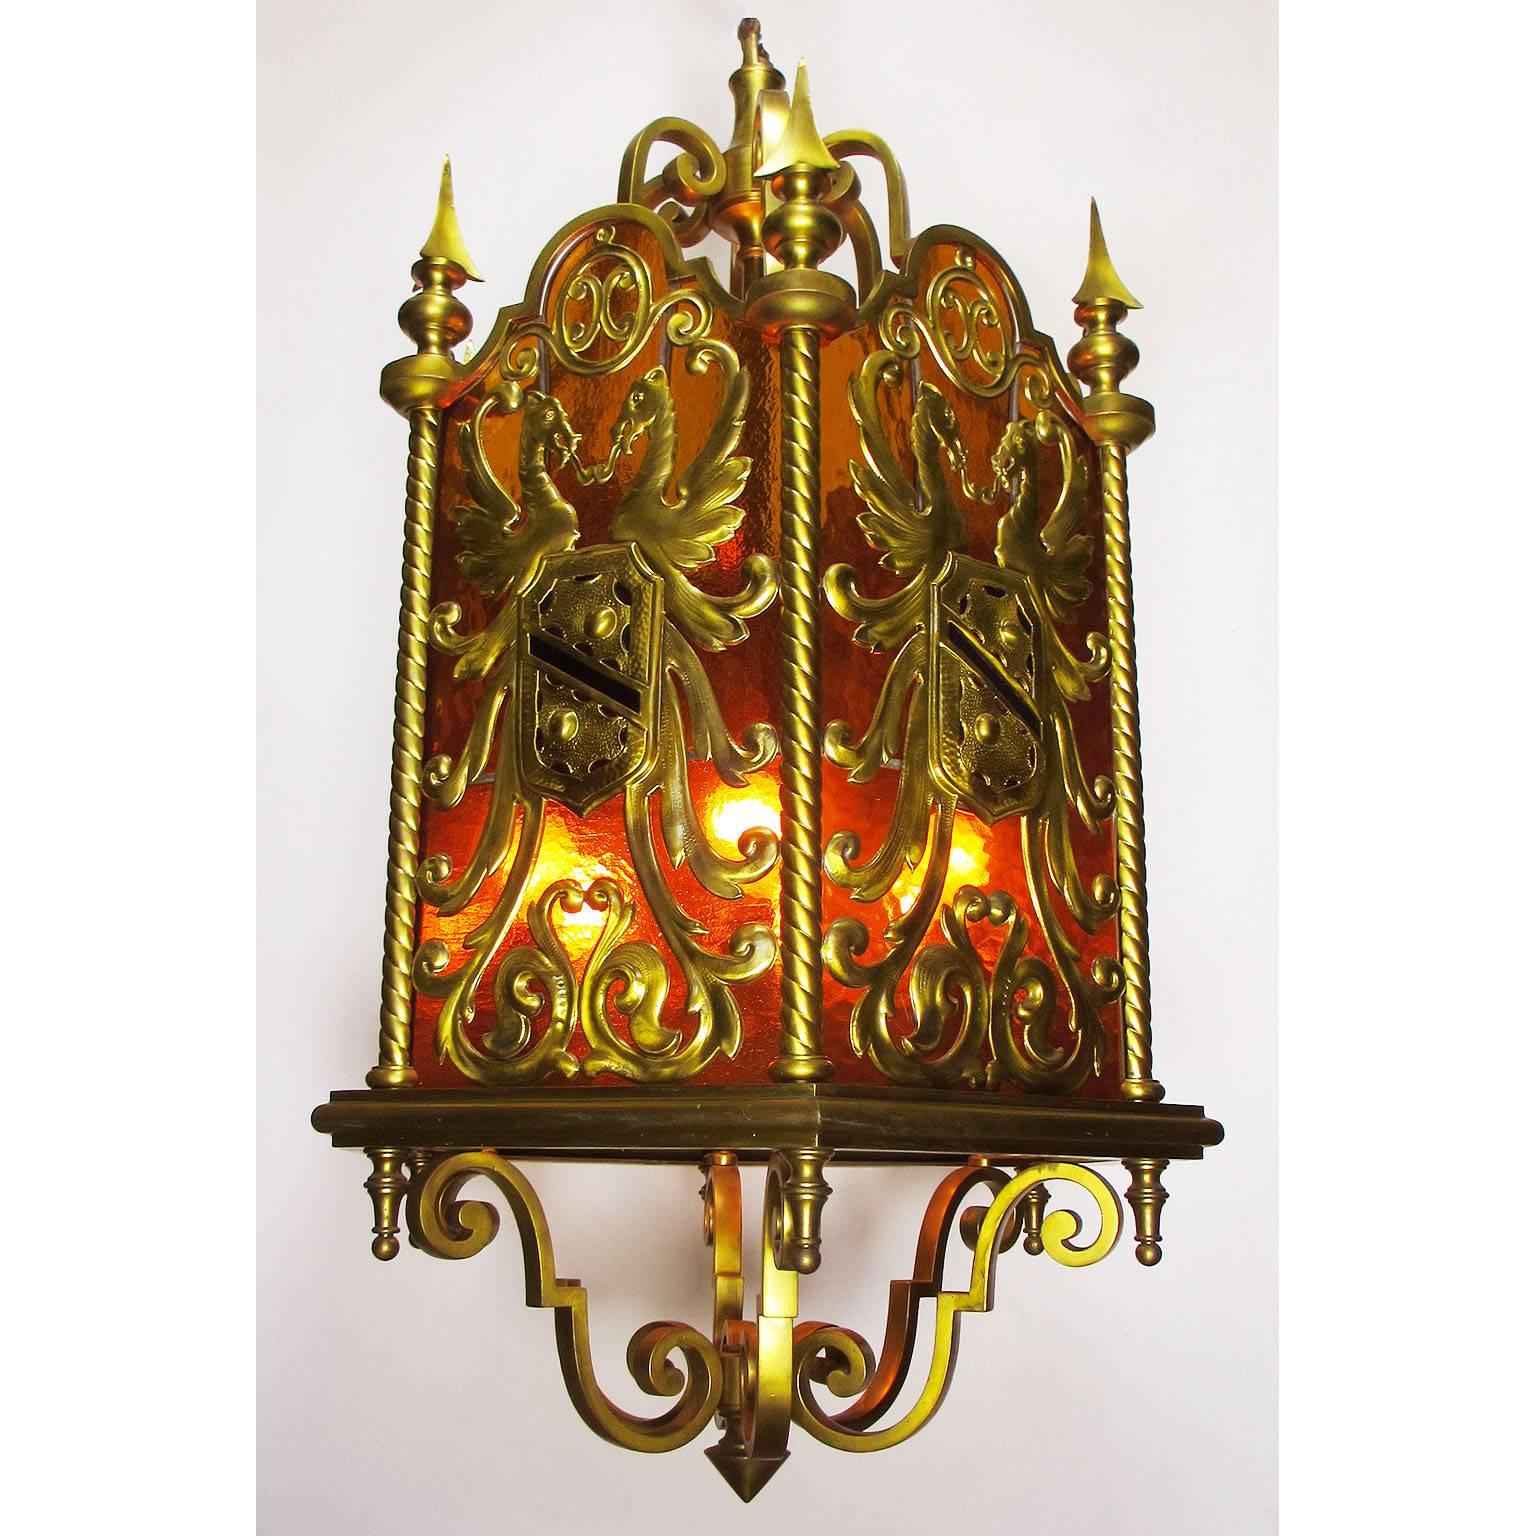 Une belle et rare lanterne suspendue de style néoclassique français du 19e-20e siècle, en bronze doré et verre coloré, le corps de forme hexagonale avec un fond en verre orange, chaque panneau centré avec un écusson royal en bronze doré représentant